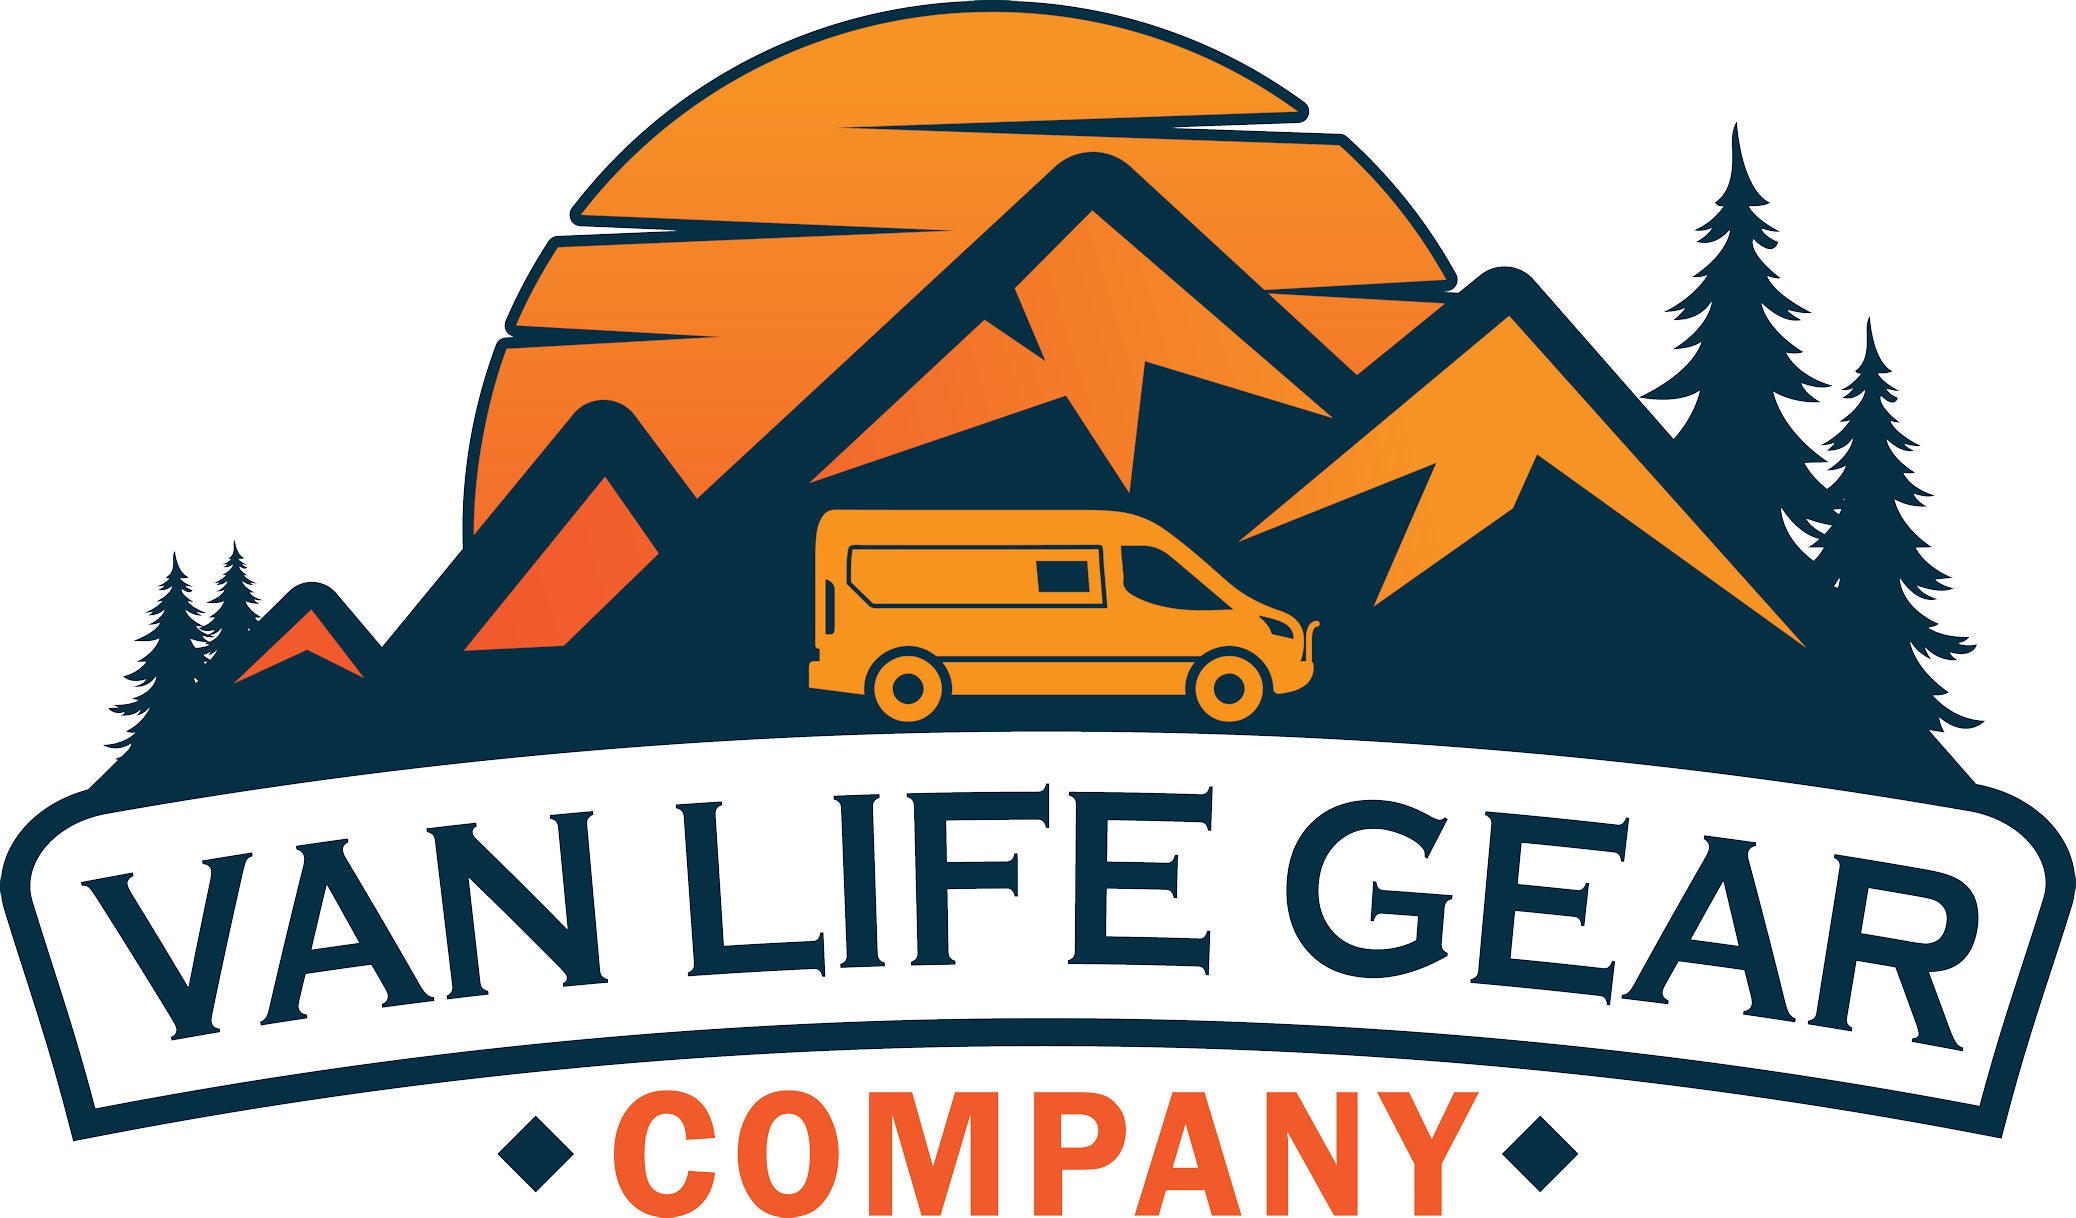 Van Life Gear Company. – Van Life Gear Company LLC